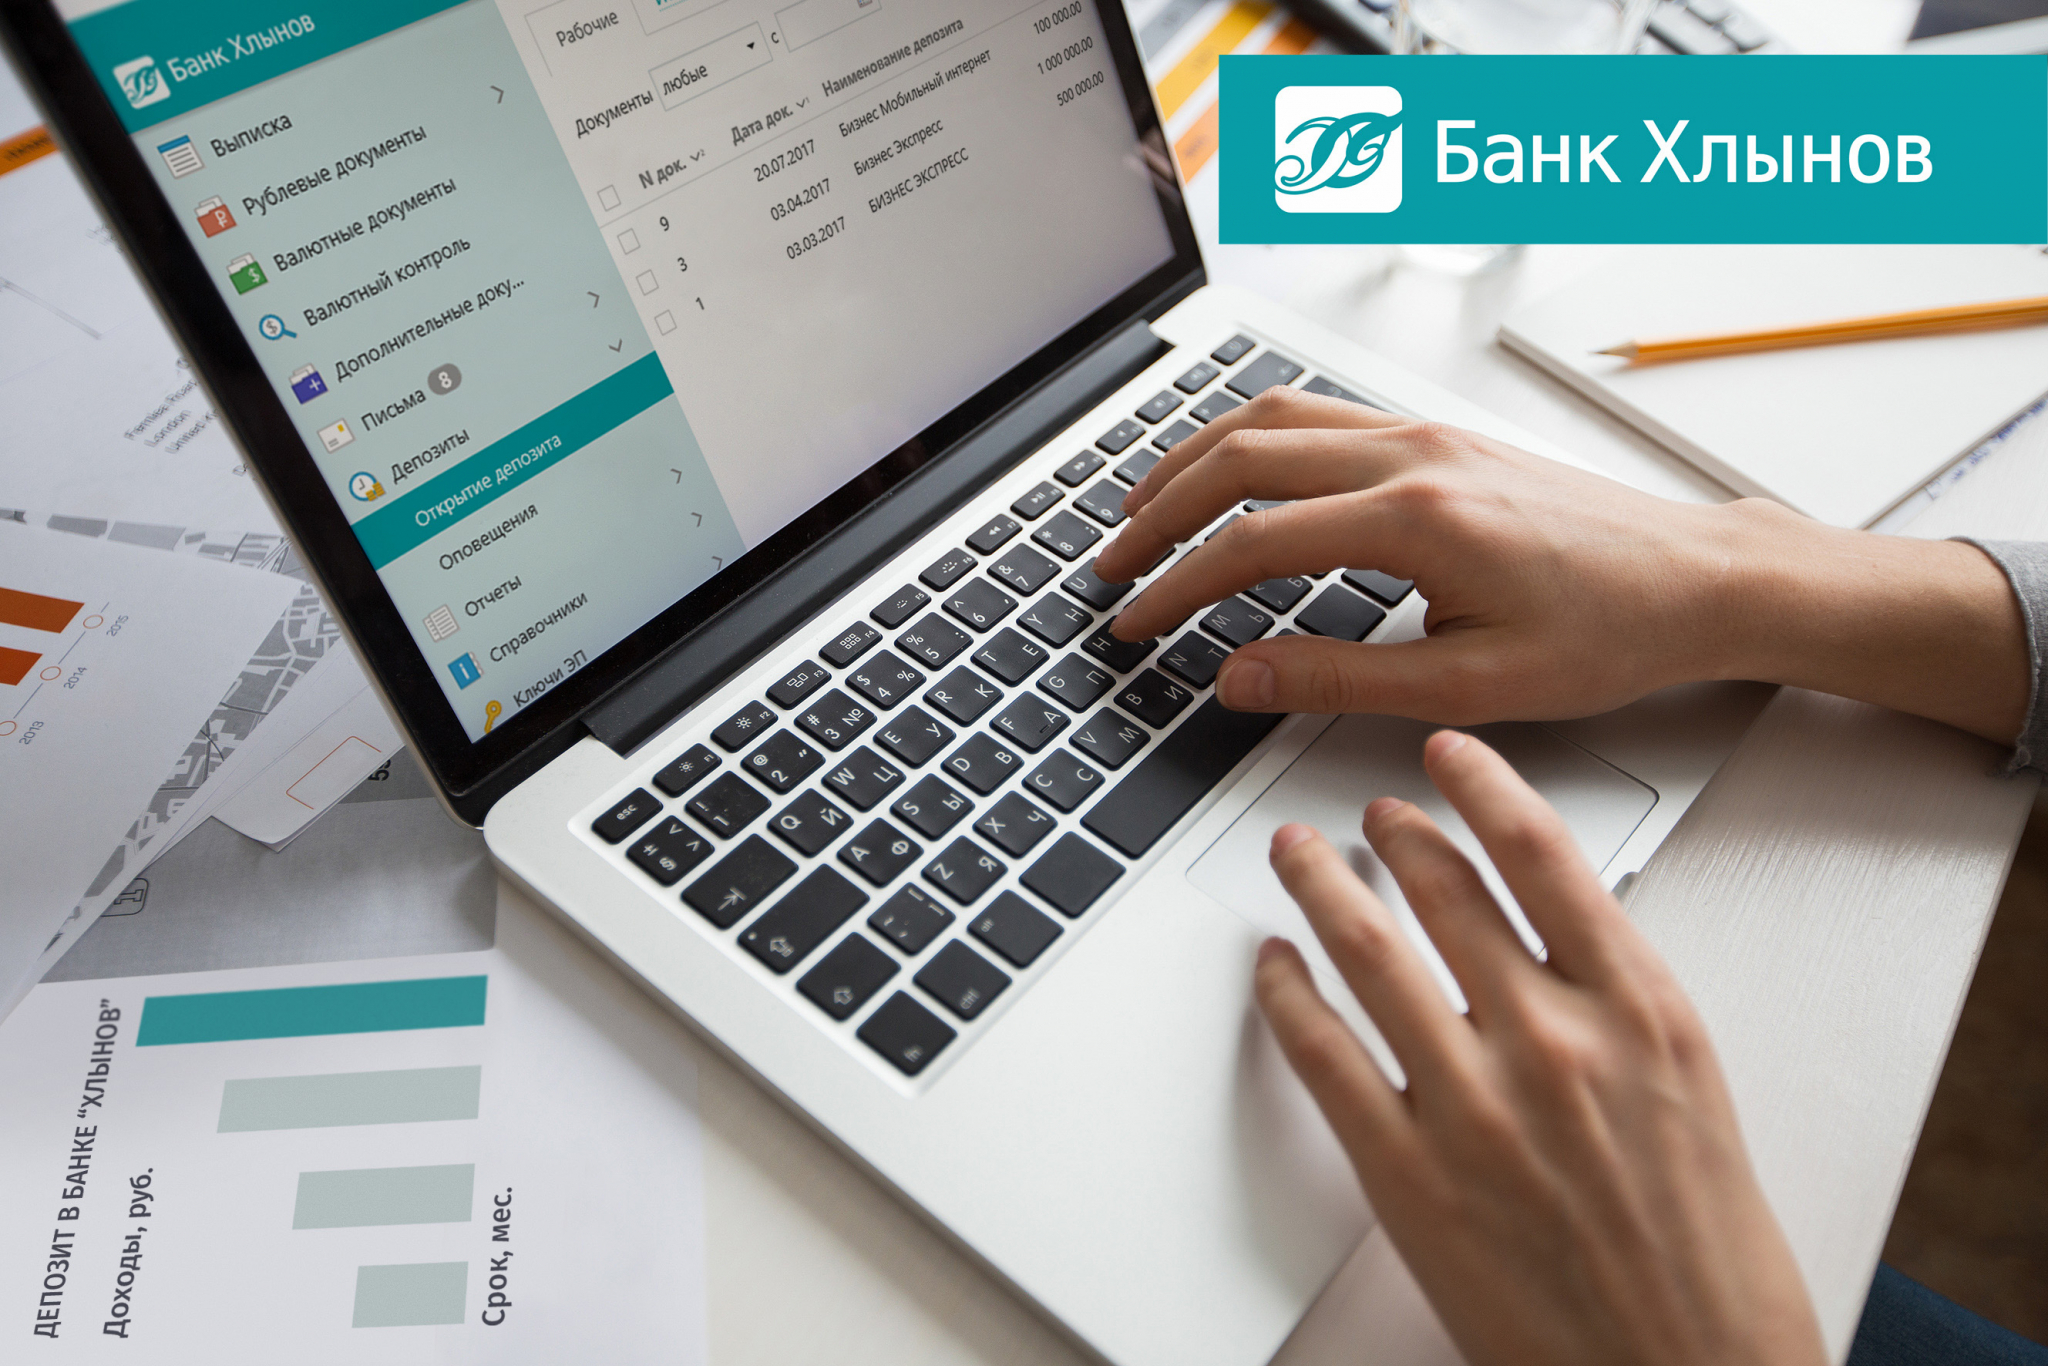 Сервис для бизнеса «Депозит iBank» от банка «Хлынов» набирает популярность.